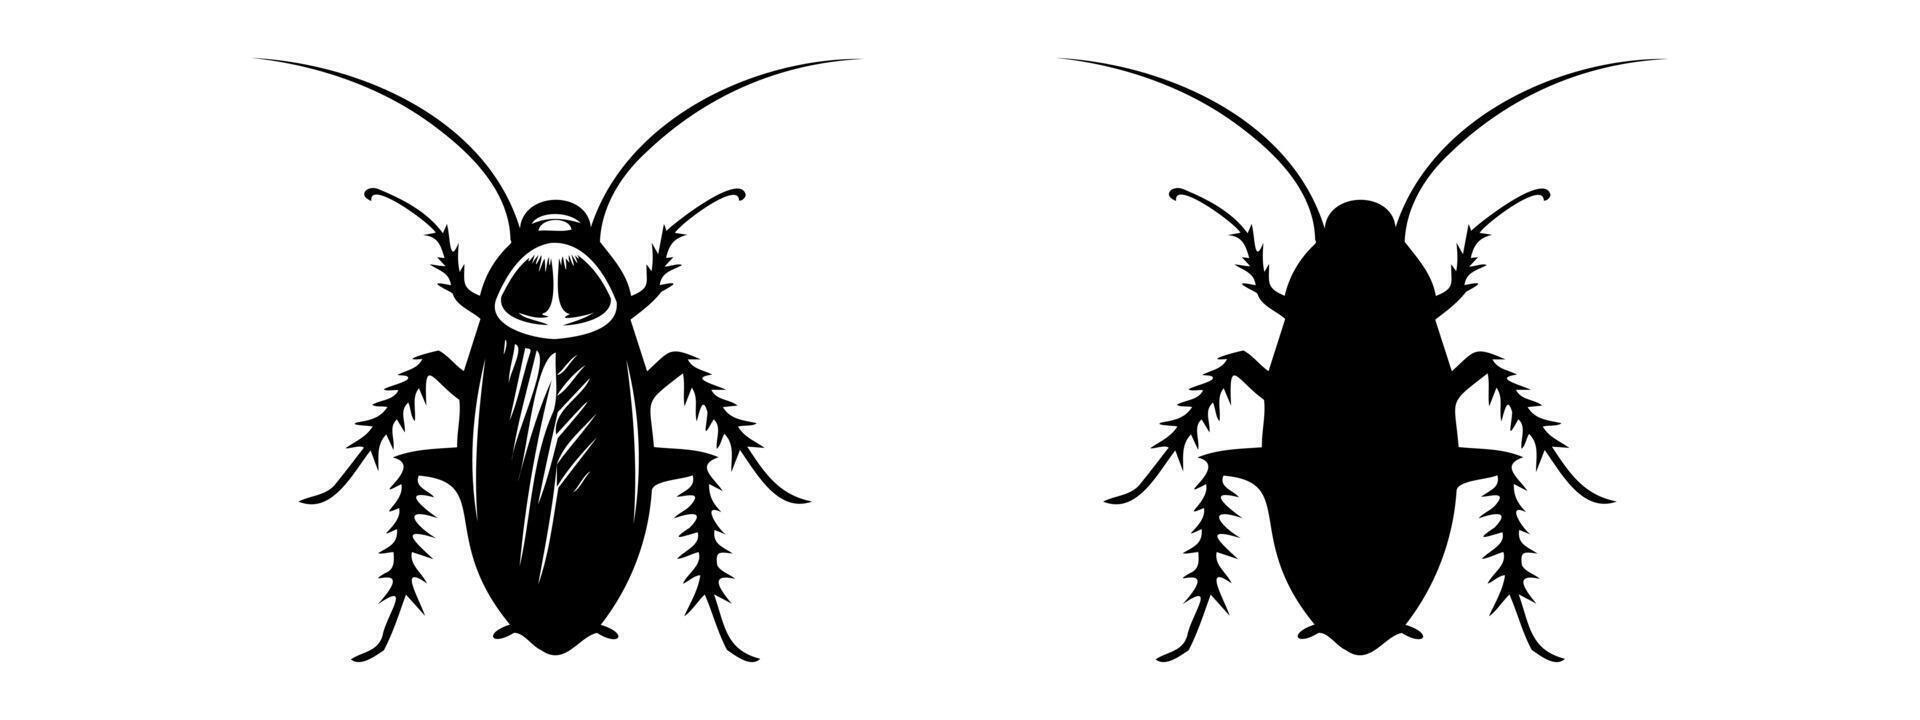 kakkerlak zwart silhouetten, gedetailleerd en stevig. insect illustratie. geïsoleerd Aan wit backdrop concept van plaag controle, besmetting, huis hygiëne. voor ontwerp, afdrukken, leerzaam materiaal vector